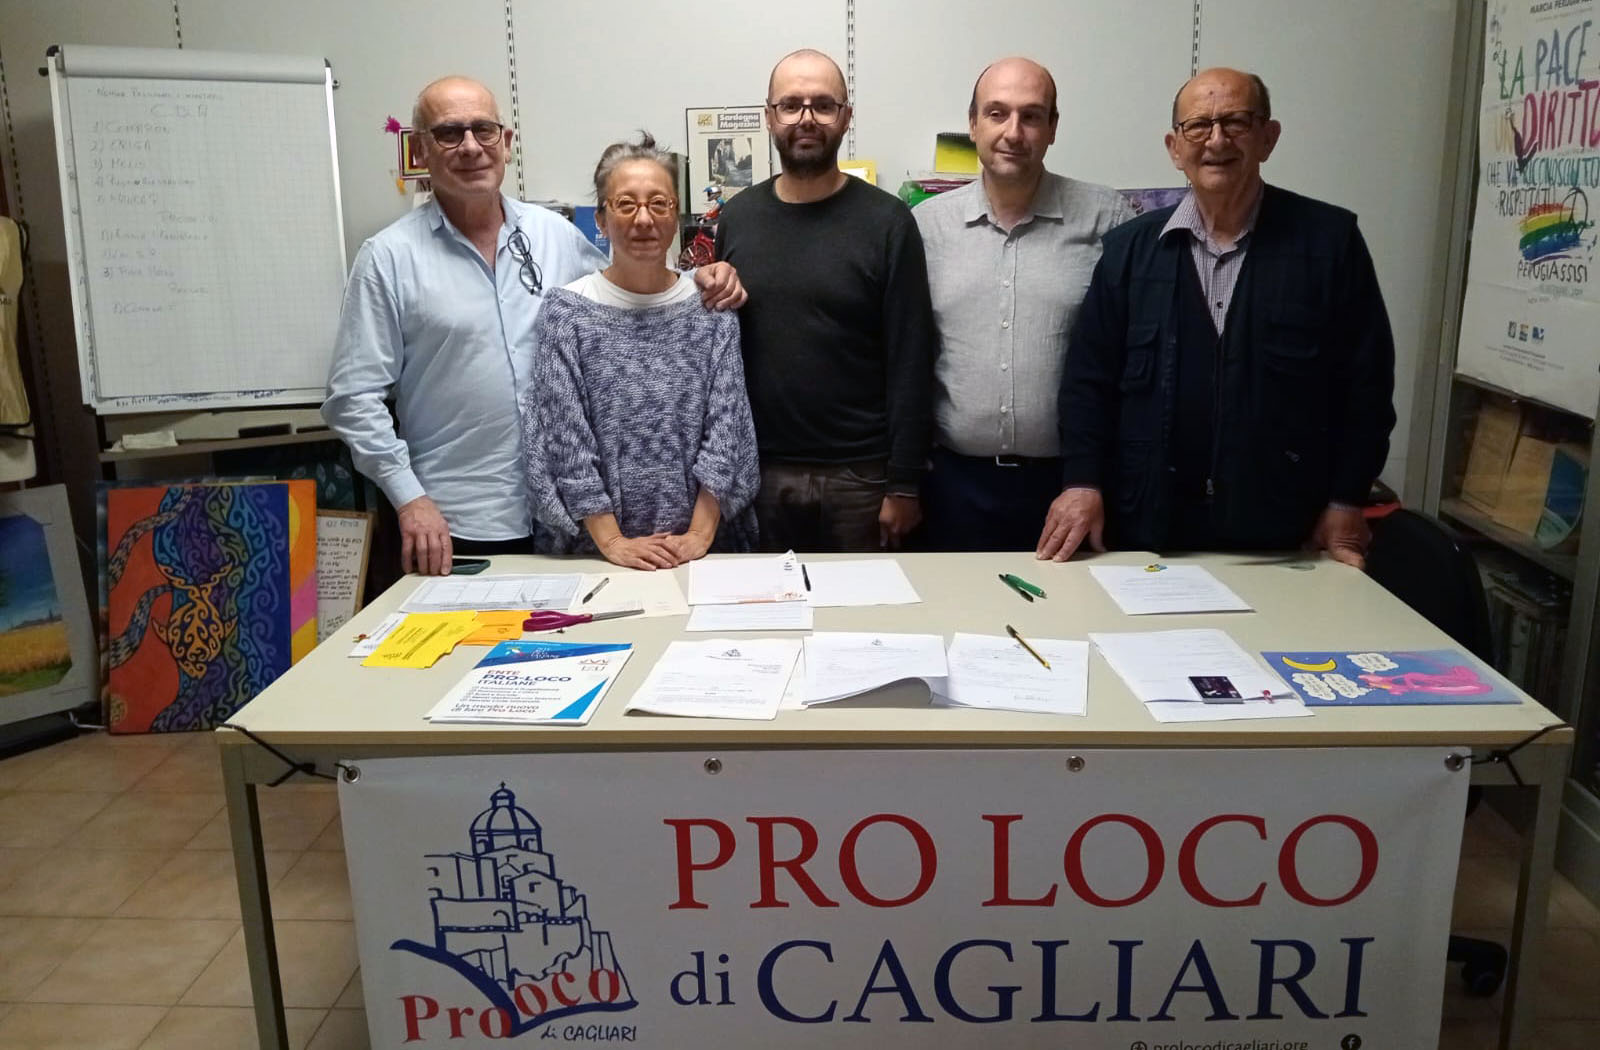 CDA Pro loco di Cagliari